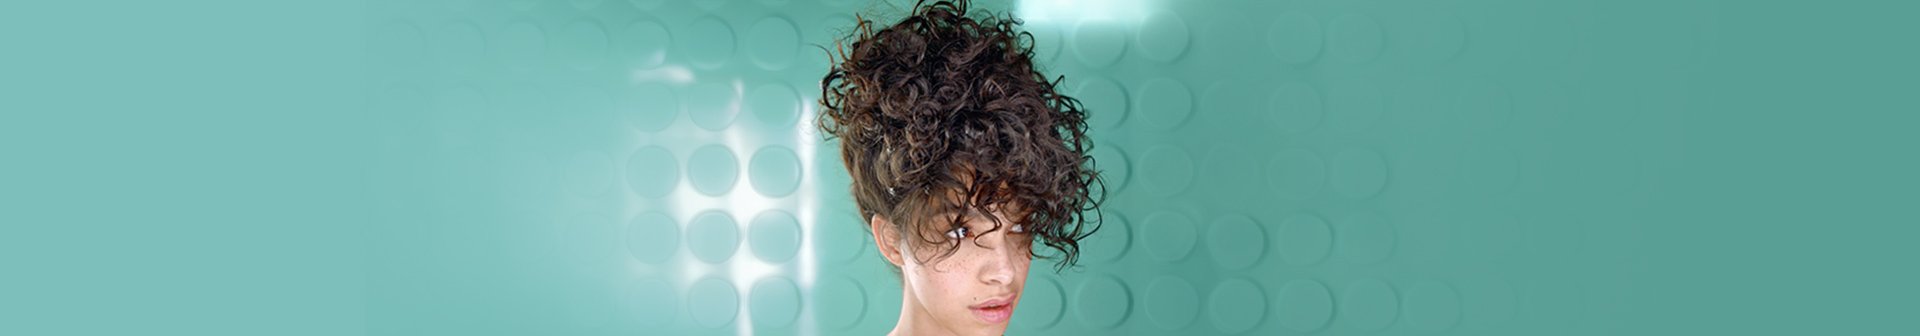 Eine junge Frau mit hochgesteckten lockigen Haaren